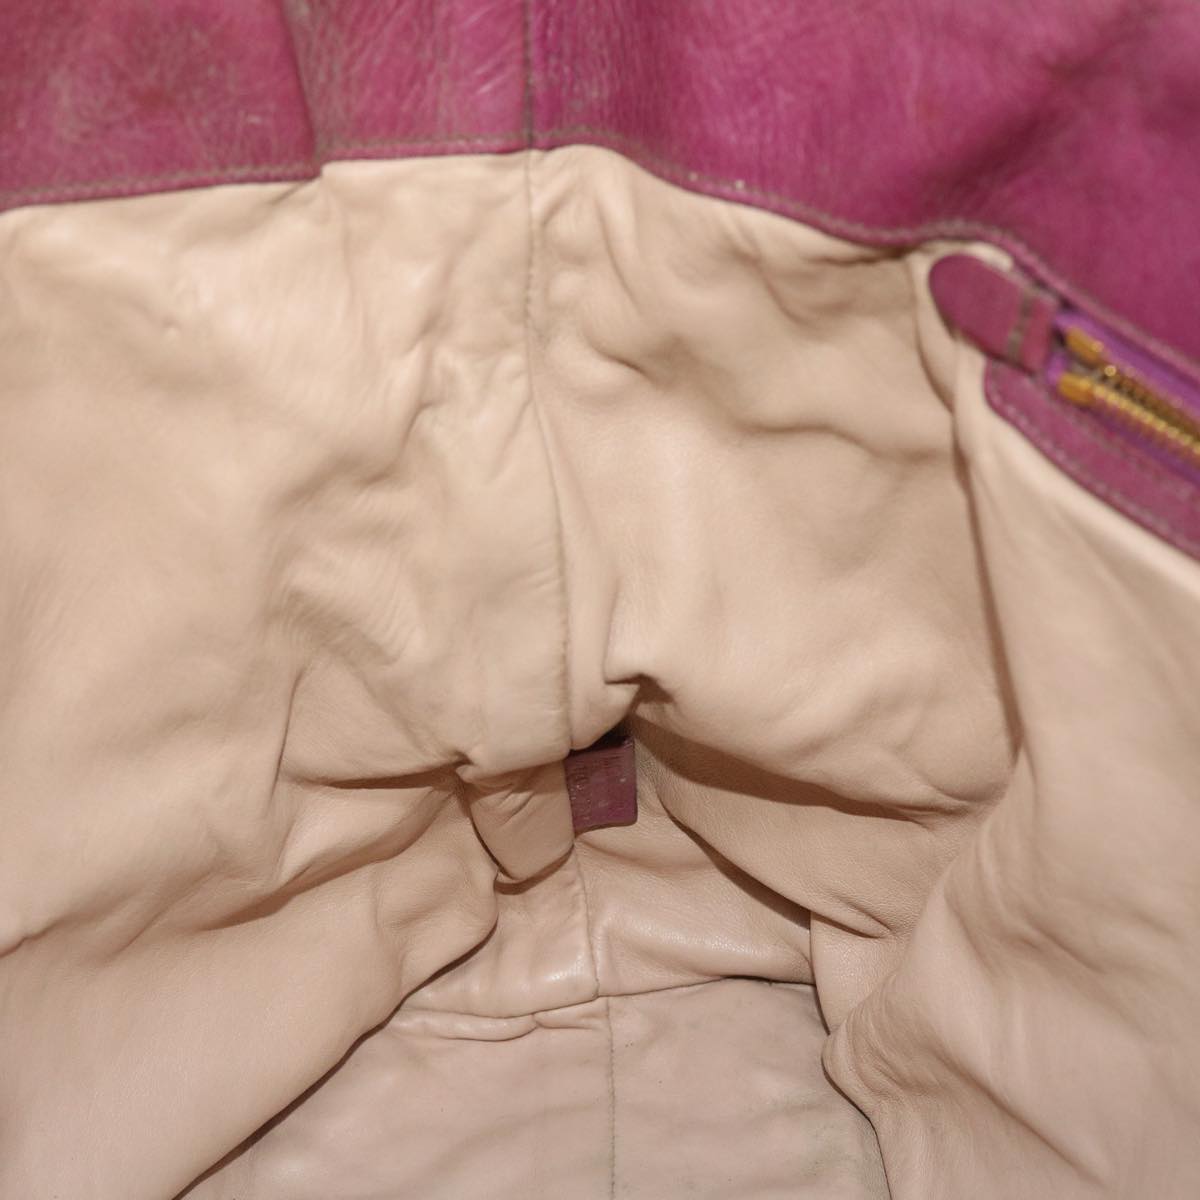 PRADA Shoulder Bag Leather Pink Auth bs8057